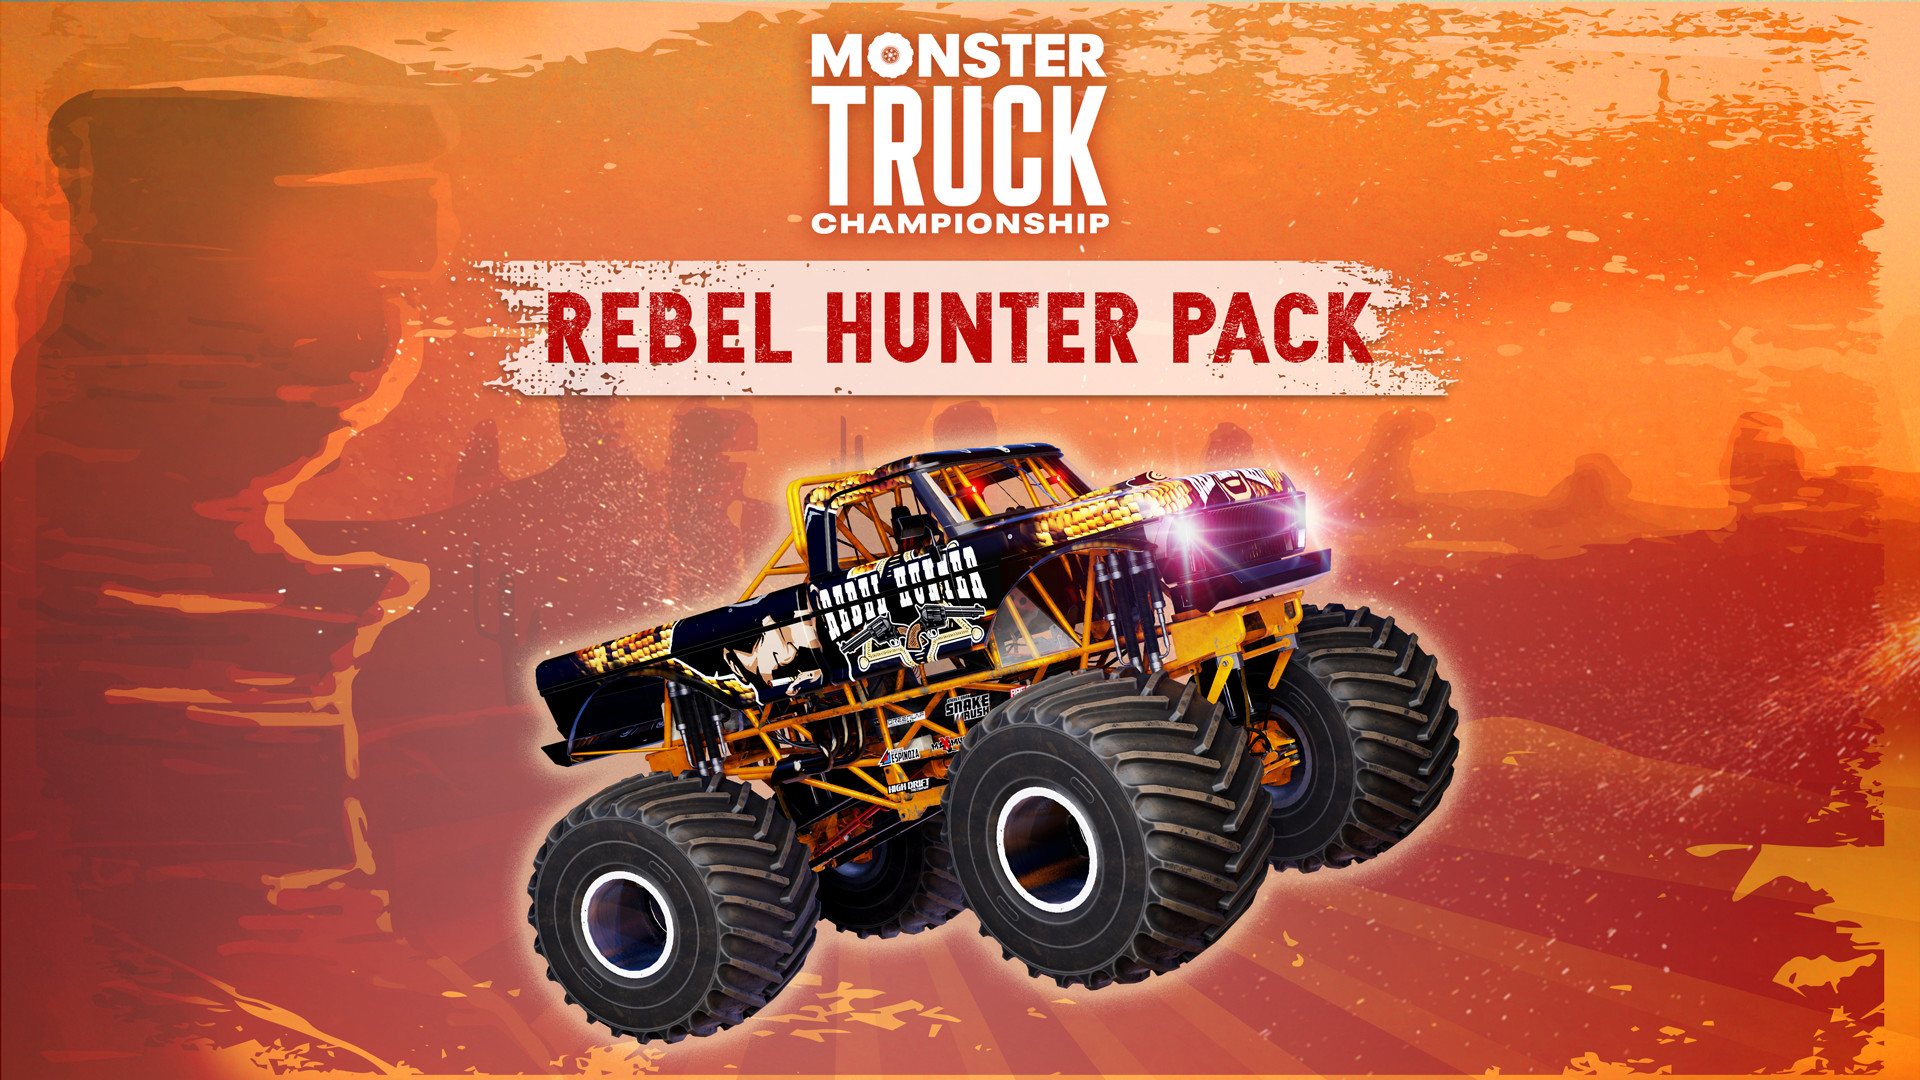 Monster Truck Championship - Rebel Hunter Pack DLC Steam CD Key [USD 10.16]